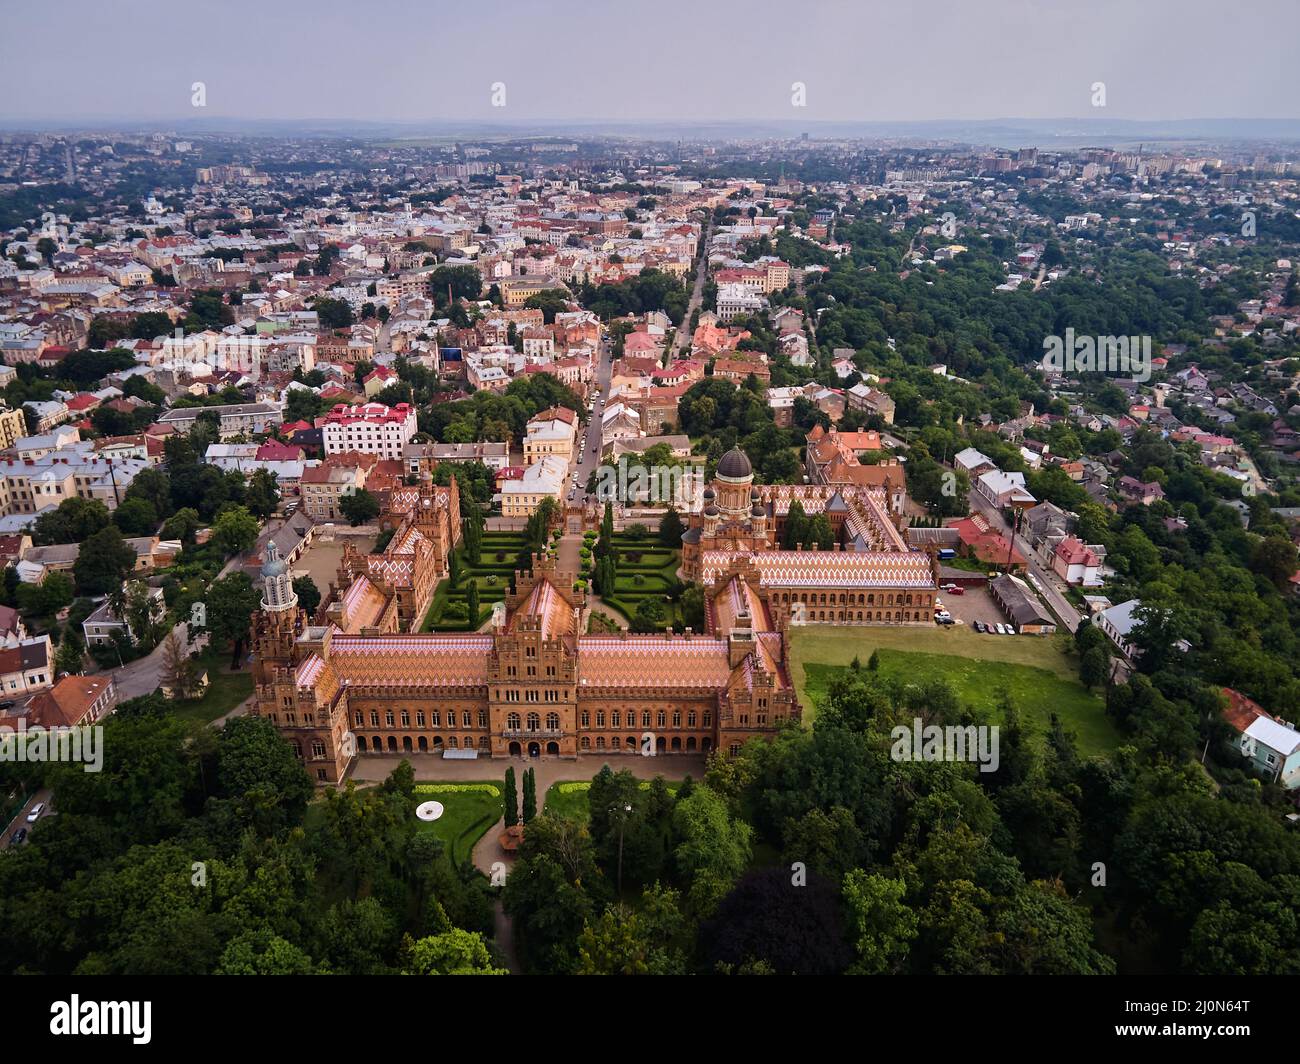 Veduta aerea dell'Università Nazionale di Yuriy Fedkovych Chernivtsi, Ucraina, monumenti architettonici dell'Ucraina occidentale, destinazione turistica di Chernivtsi. Foto Stock